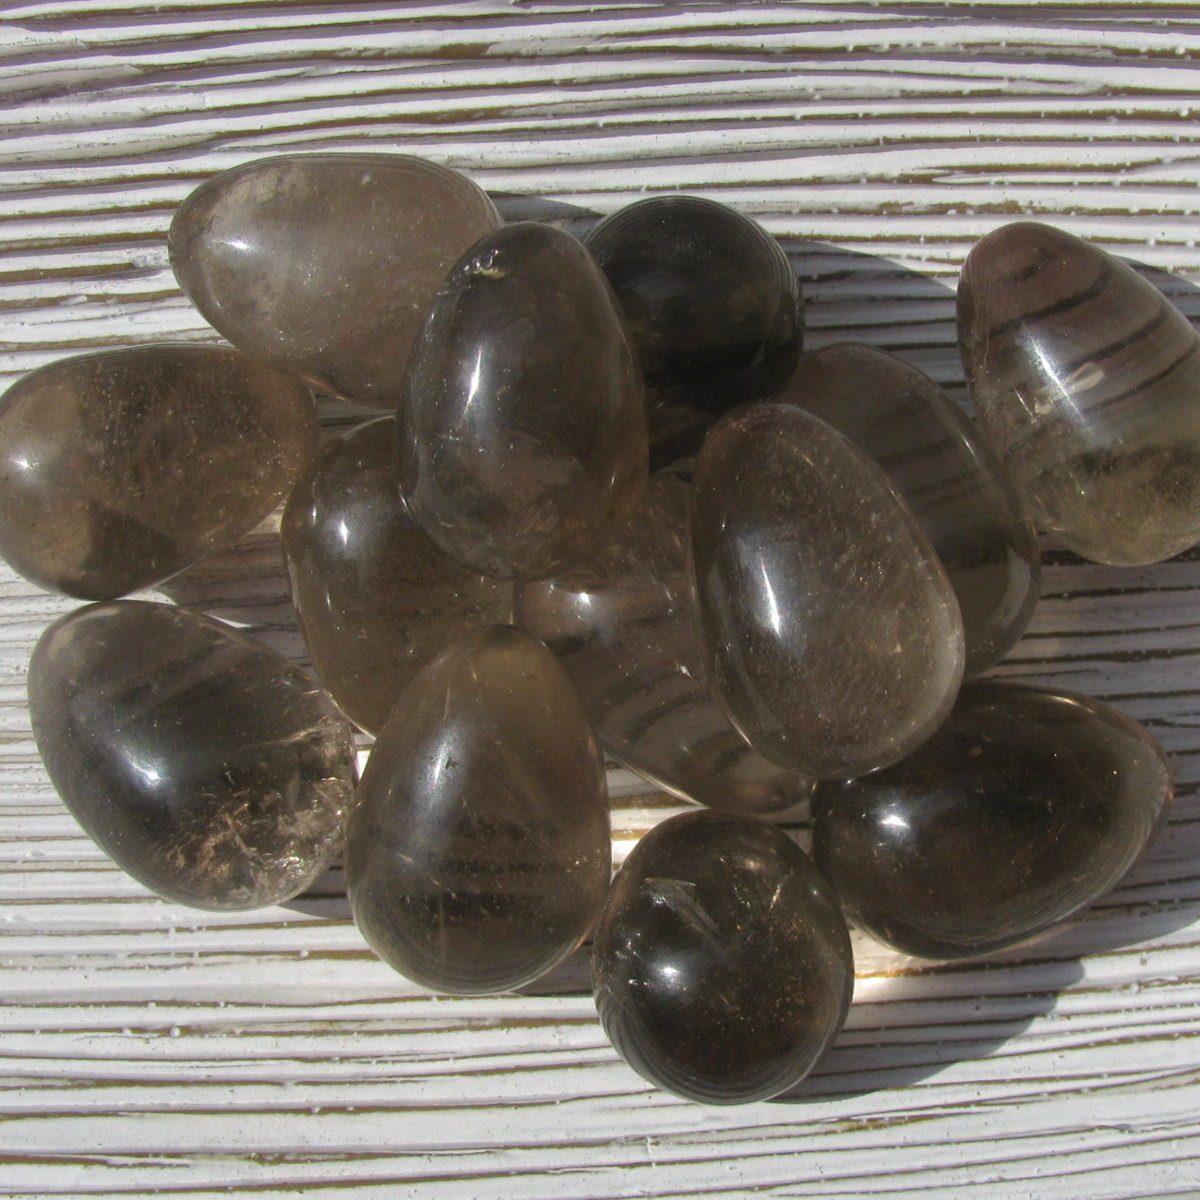 Smoky Quartz Stones | Shop Healing Smoky Quartz Crystals ...